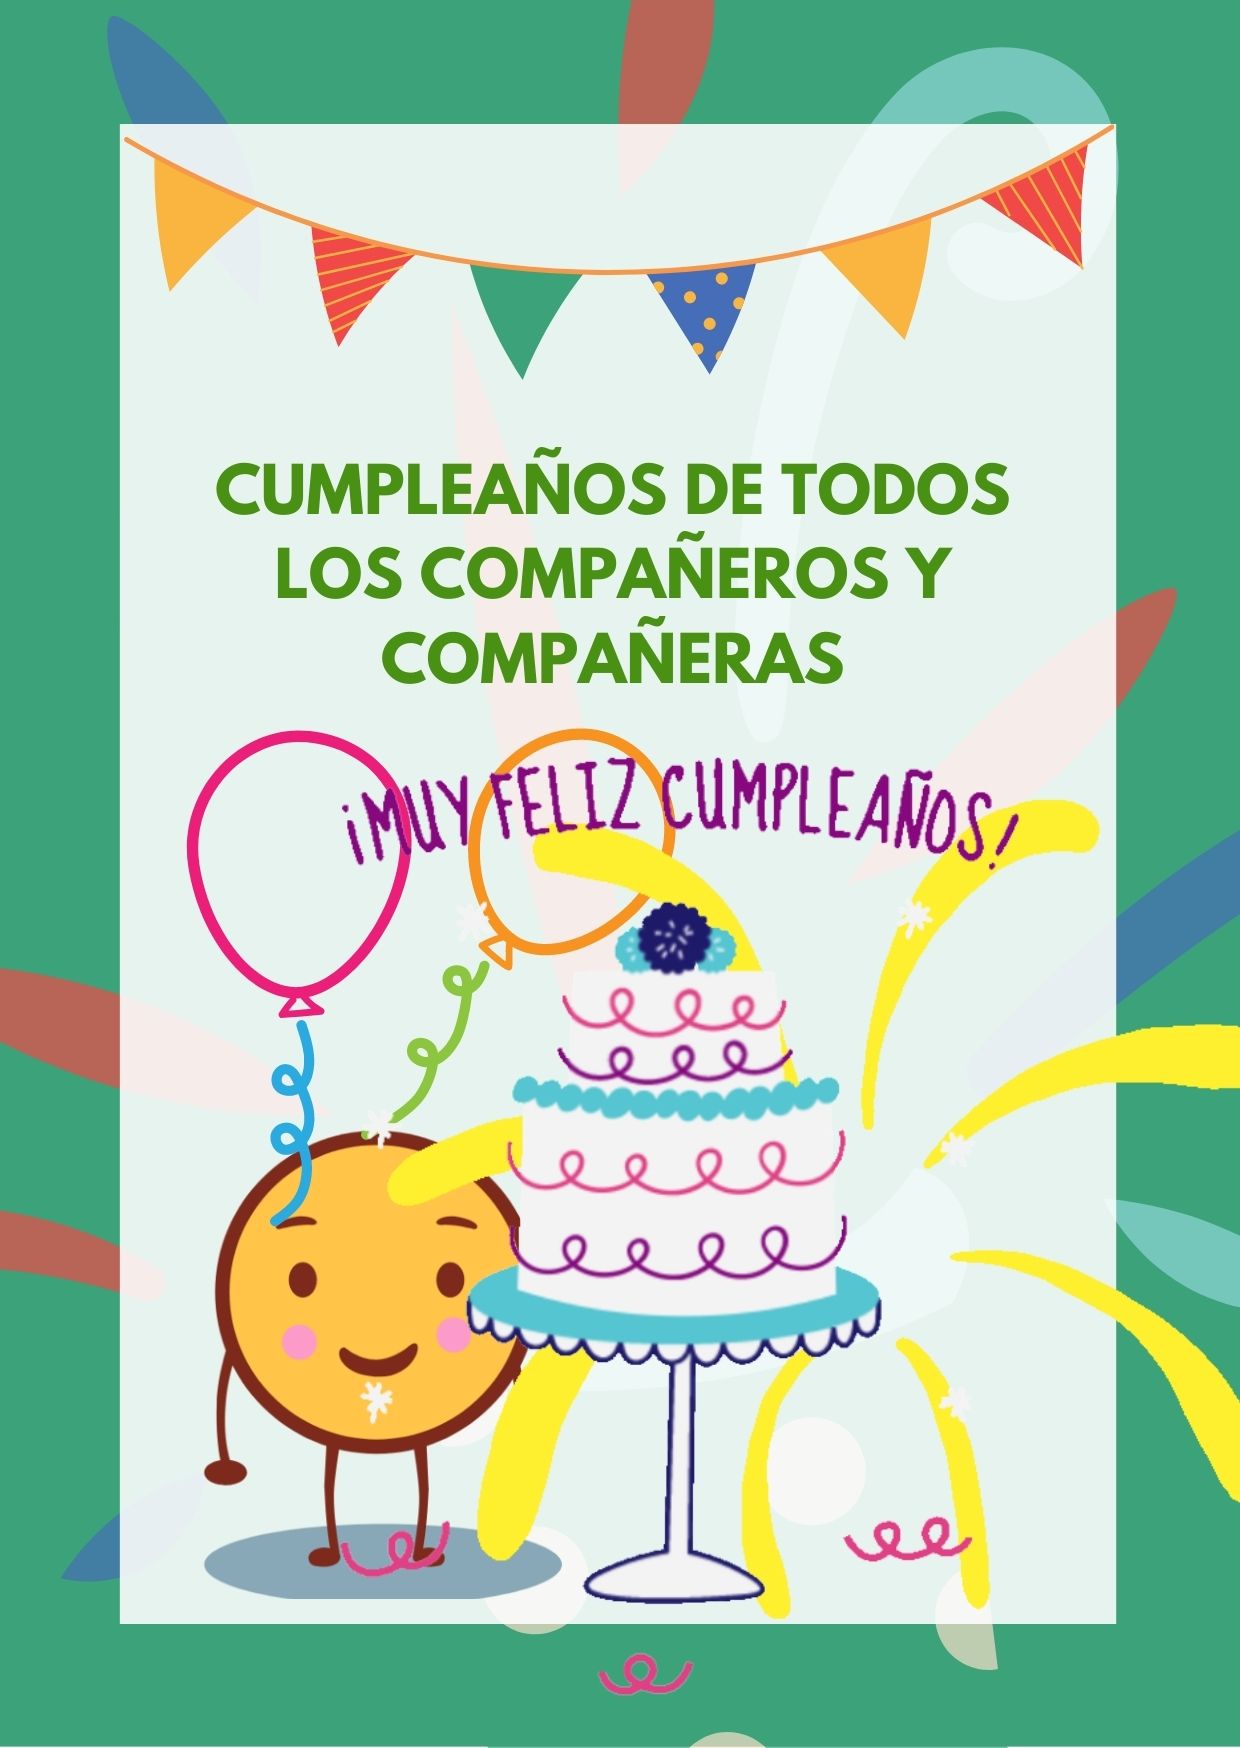 La imagen muestra un cartel de cumpleaños